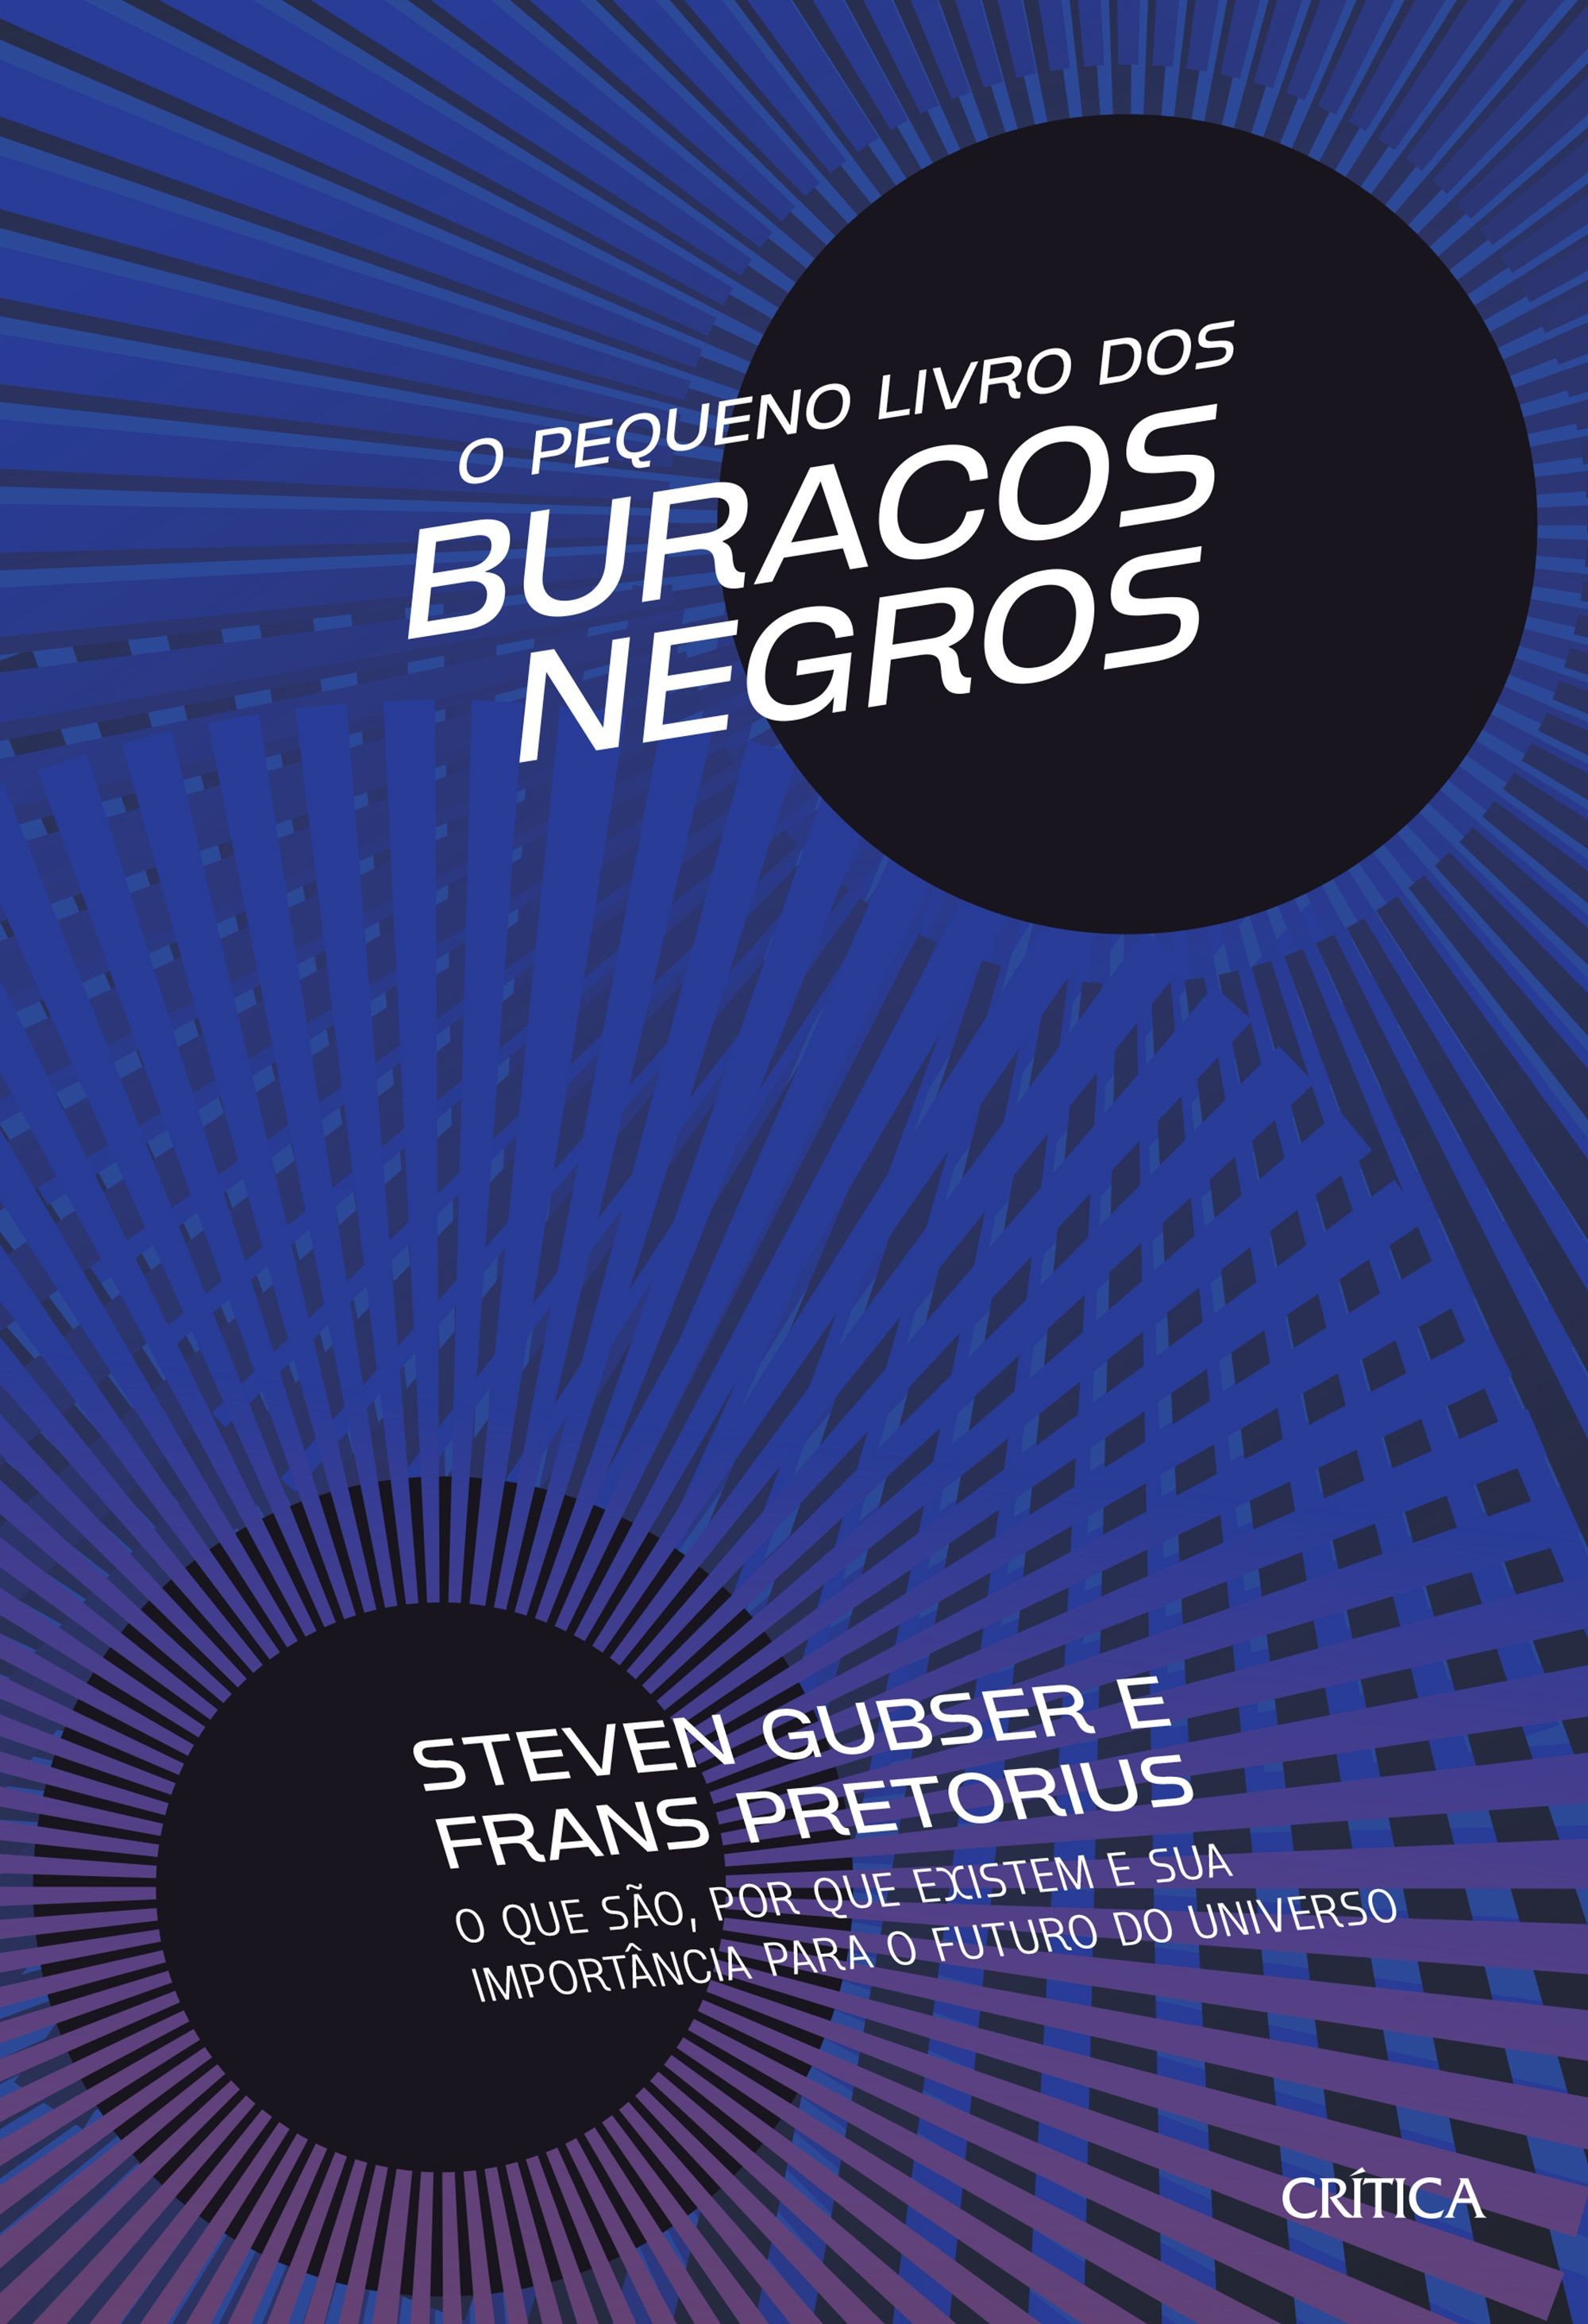 O pequeno livro dos buracos negros, por Steven S. Gubser e Frans Pretorius (Crítica, 256 páginas, R$56,90) (Foto: Divulgação)